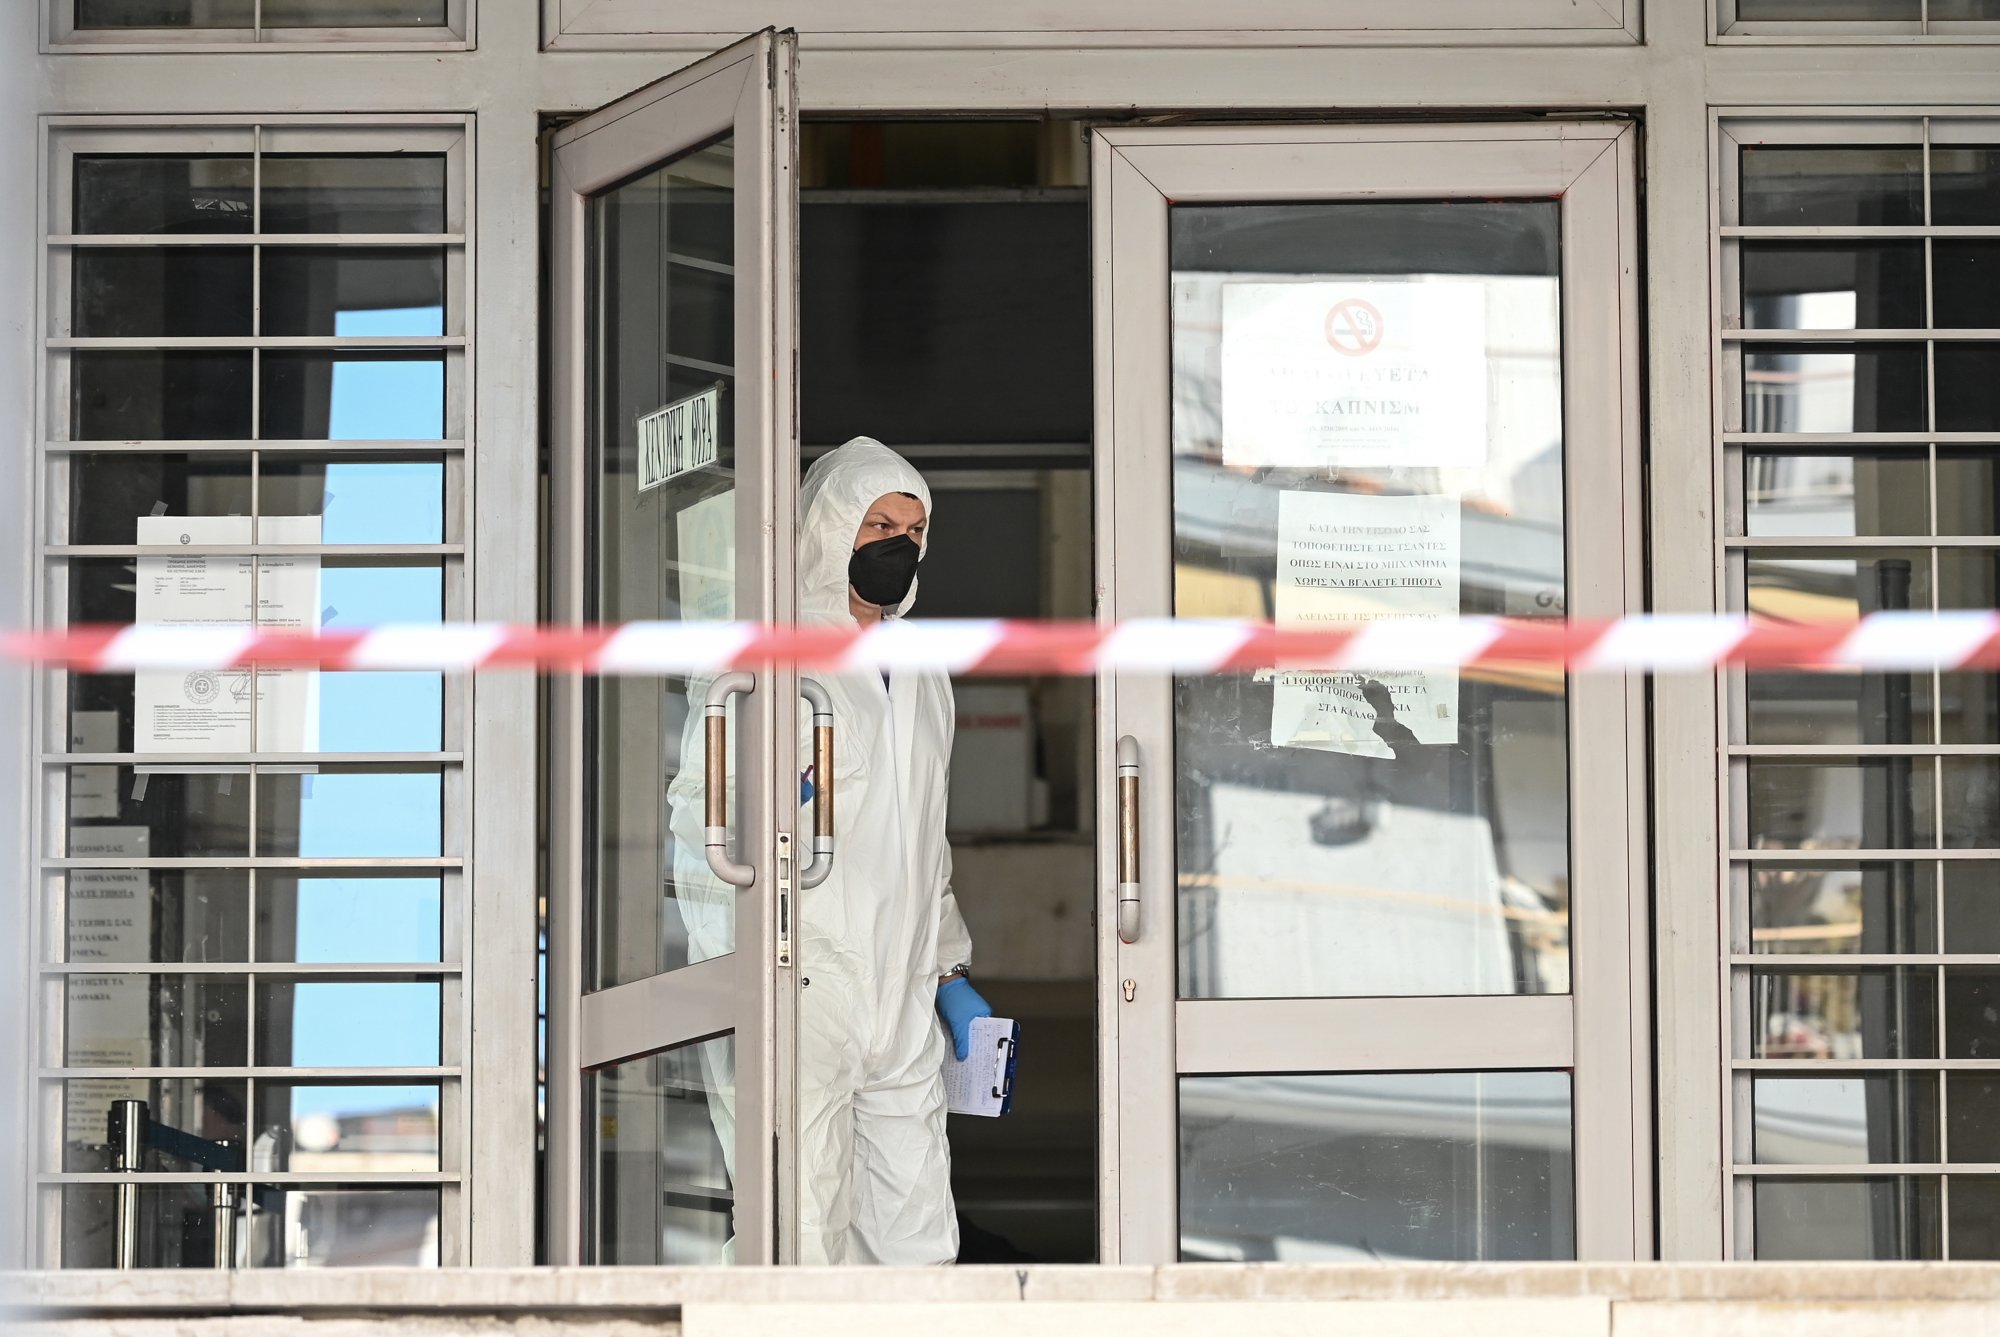 Οι εκτιμήσεις της αντιτρομοκρατικής για τον φάκελο - βόμβα στα δικαστήρια - Σοβαρά κενά ασφαλείας παραδέχεται ο Φλωρίδης